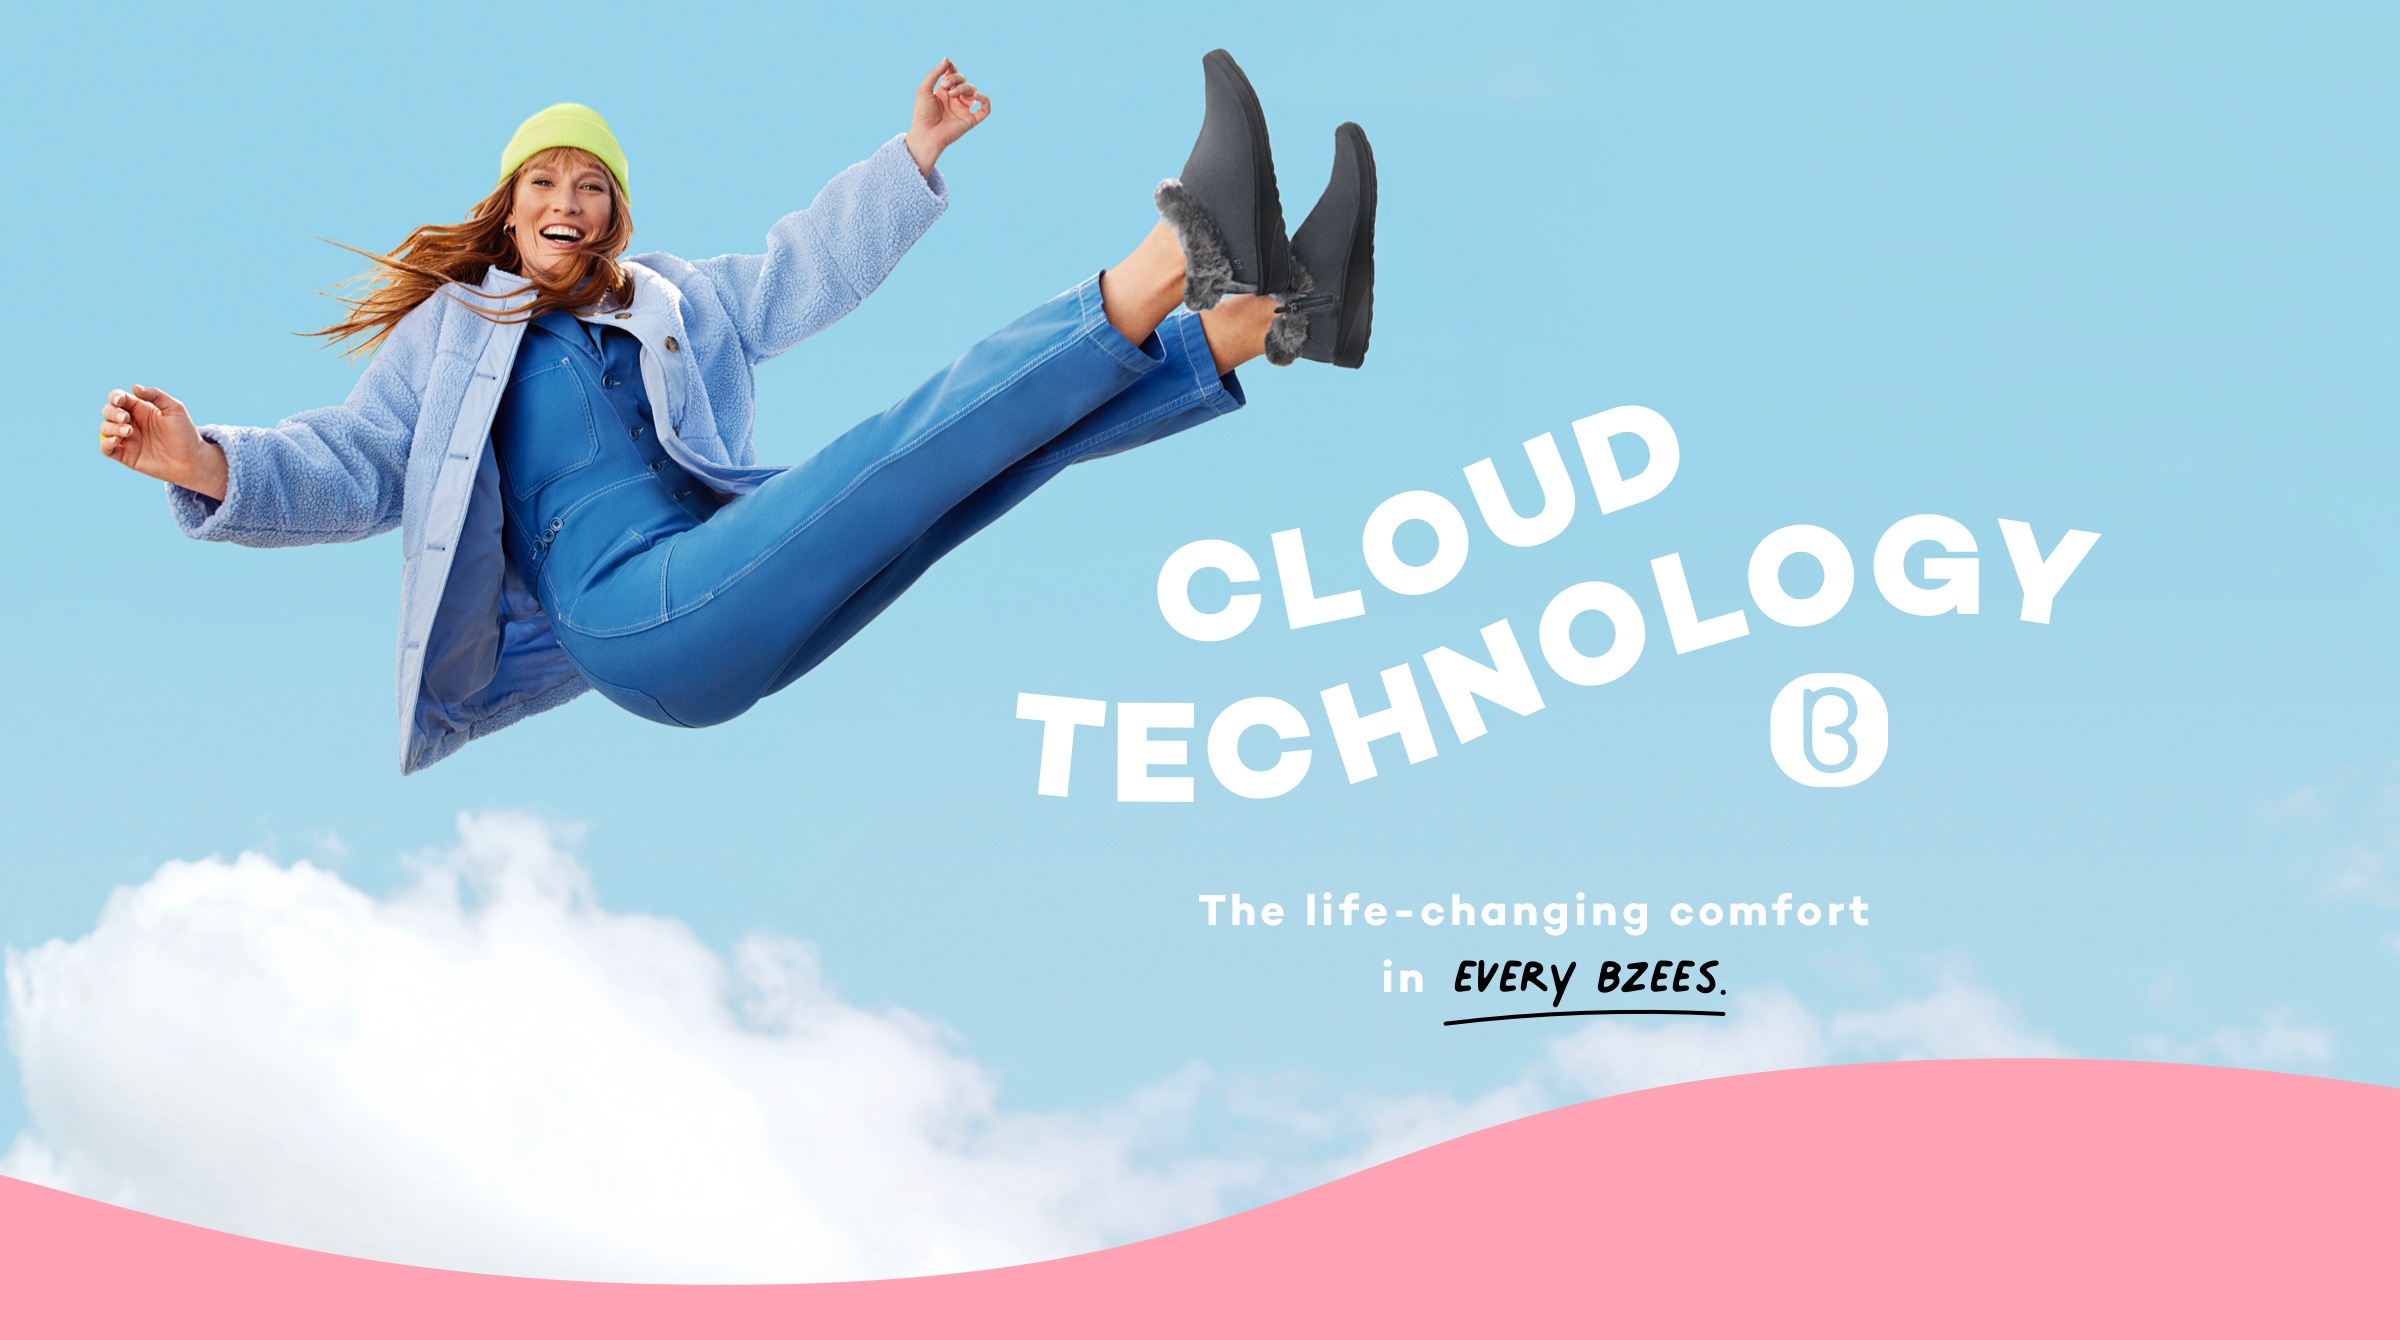 bzees cloud technology